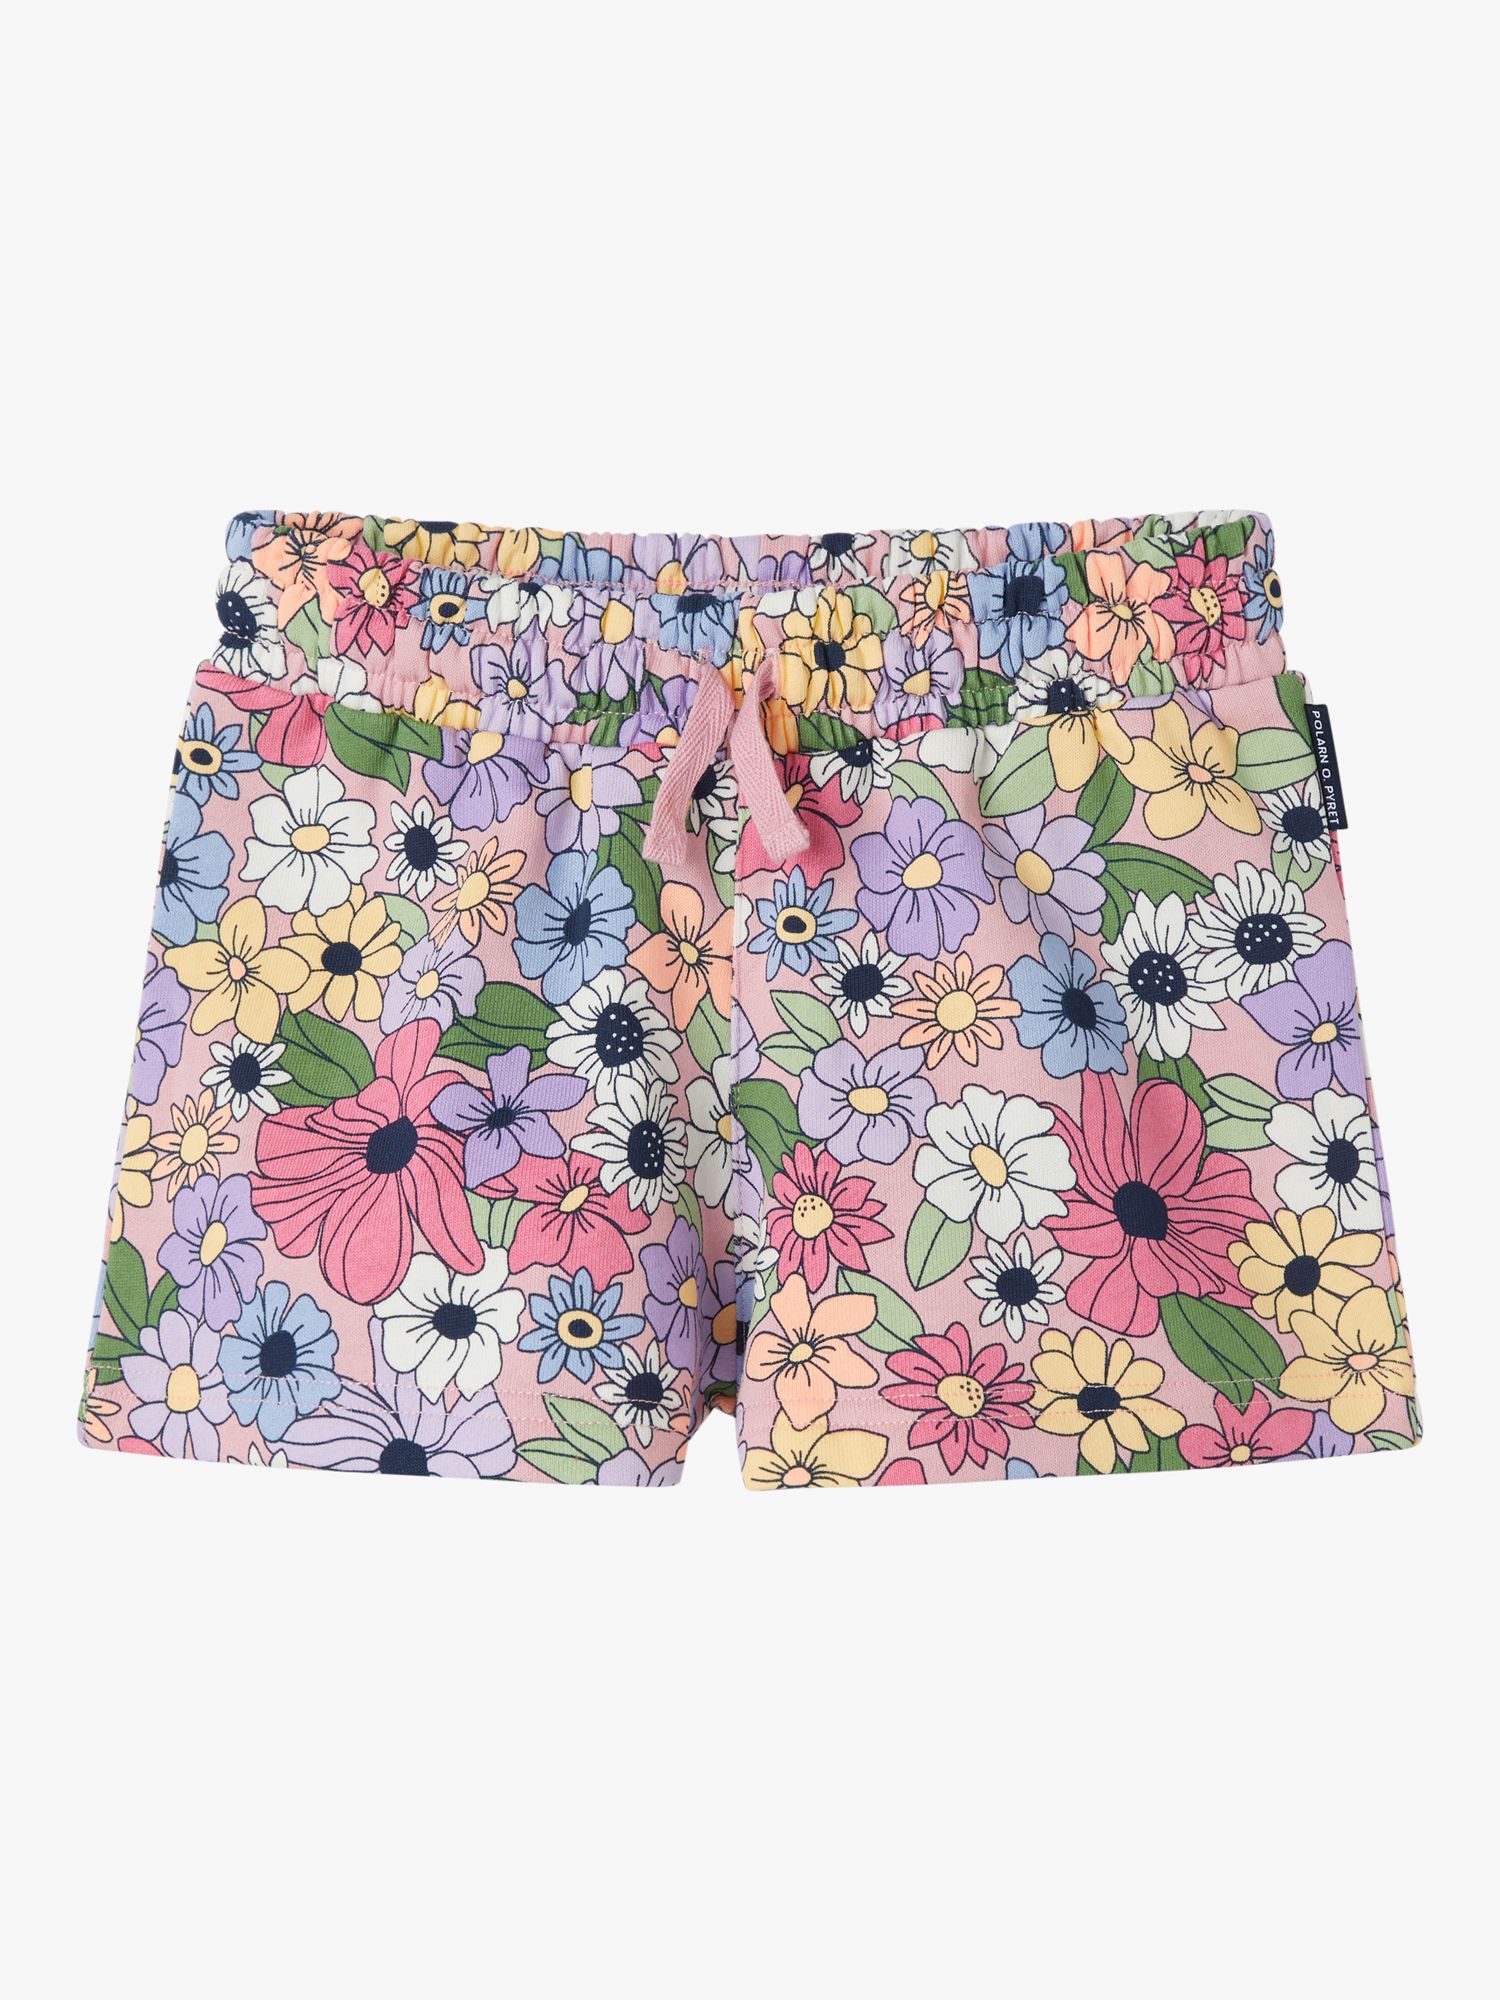 Polarn O. Pyret Kids' Organic Cotton Floral Print Drawstring Shorts, Pink, 12-18 months